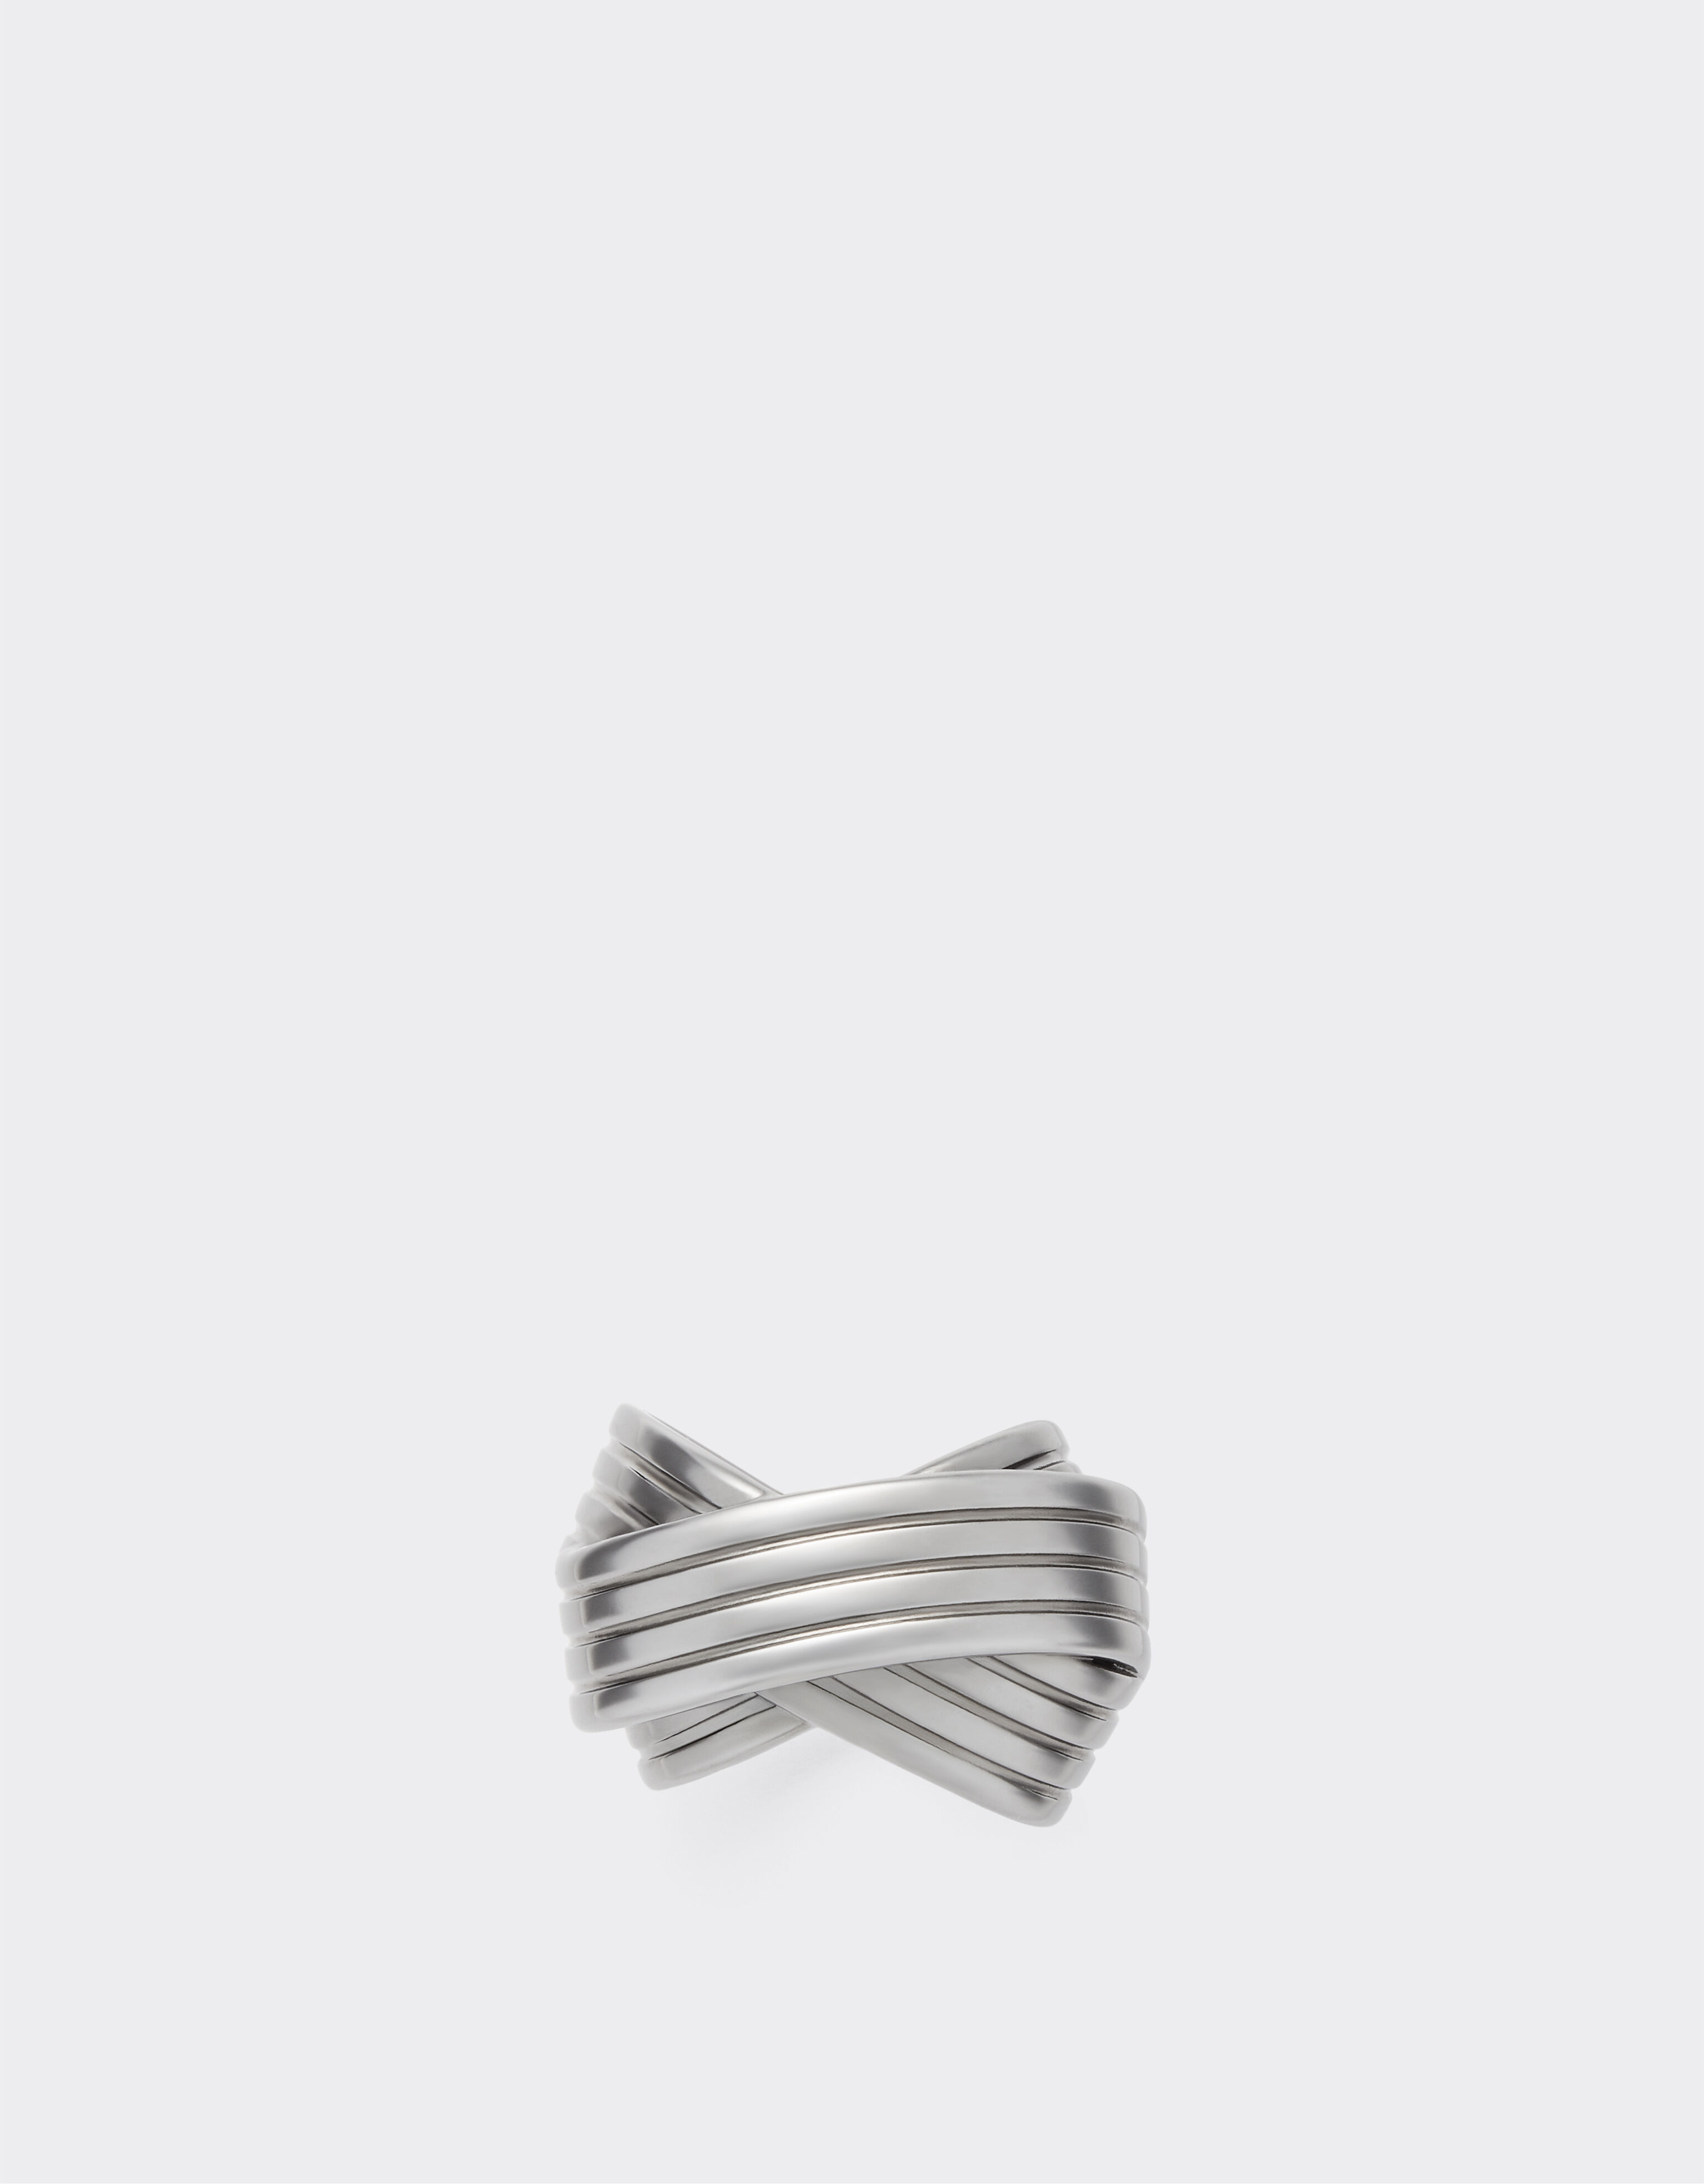 Ferrari Ring mit Rennstreckenmotiv Kohle 21155f